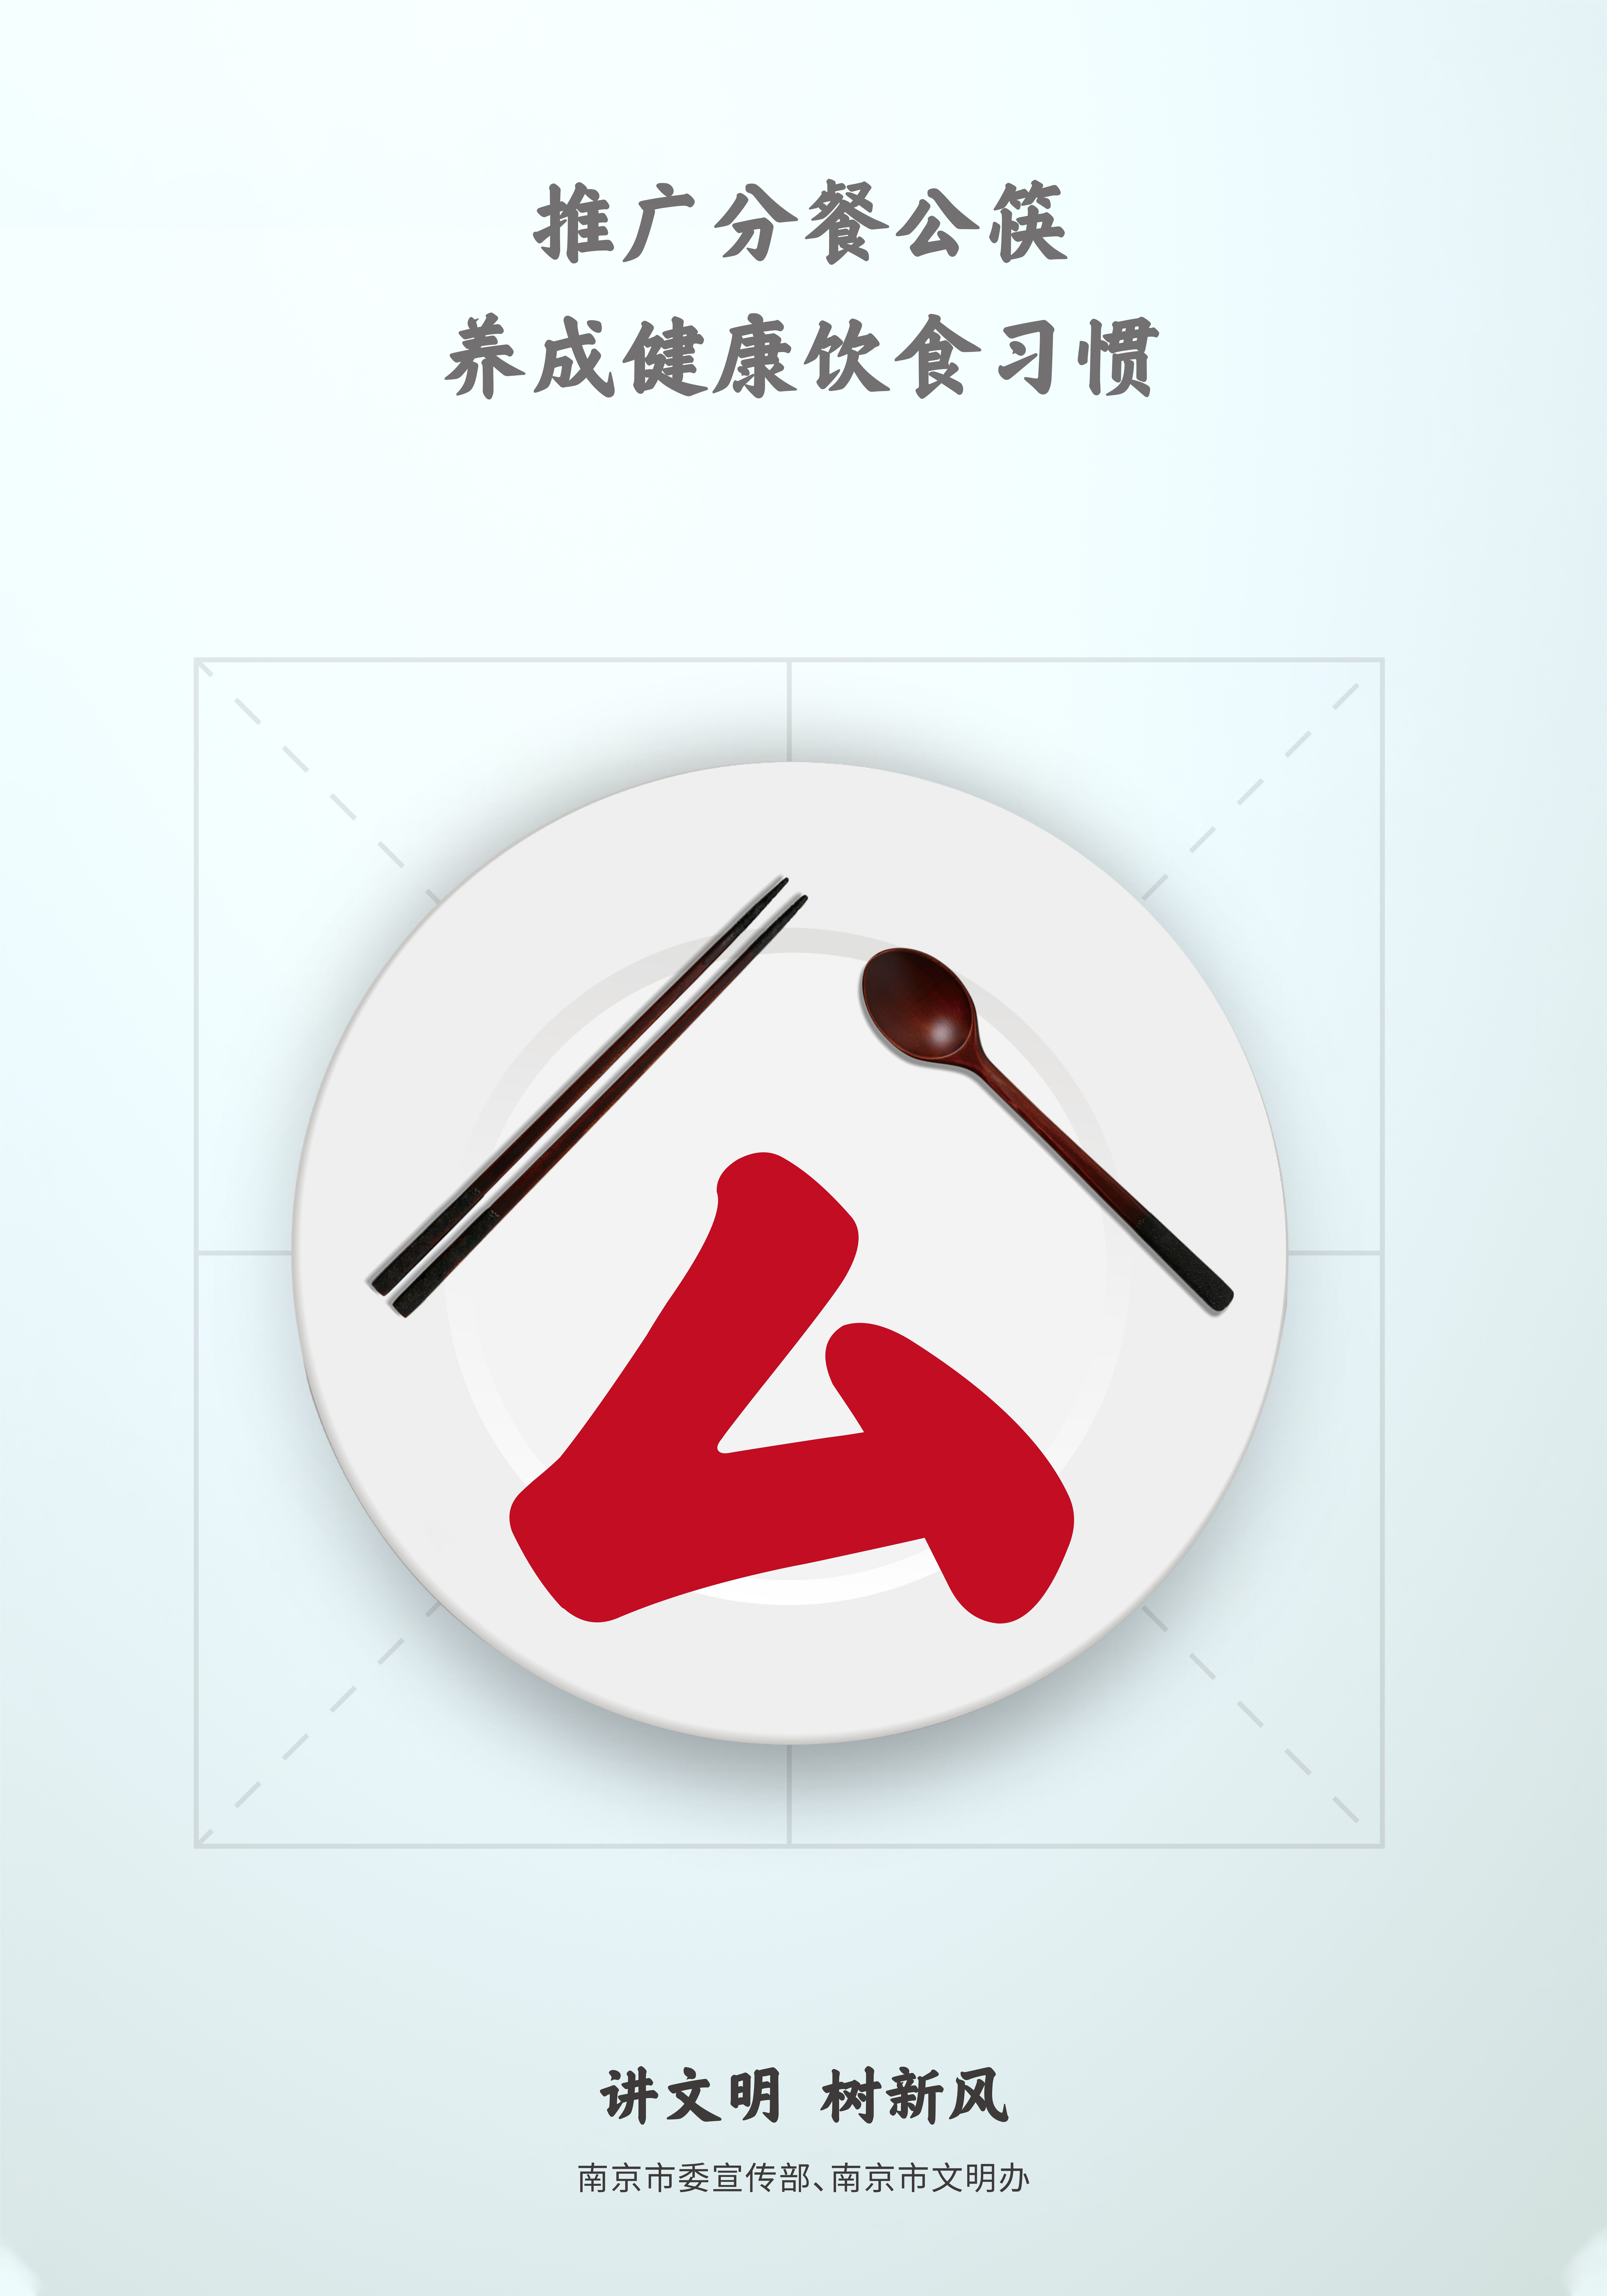 推广分餐公筷，养成健康饮食习惯2.jpg